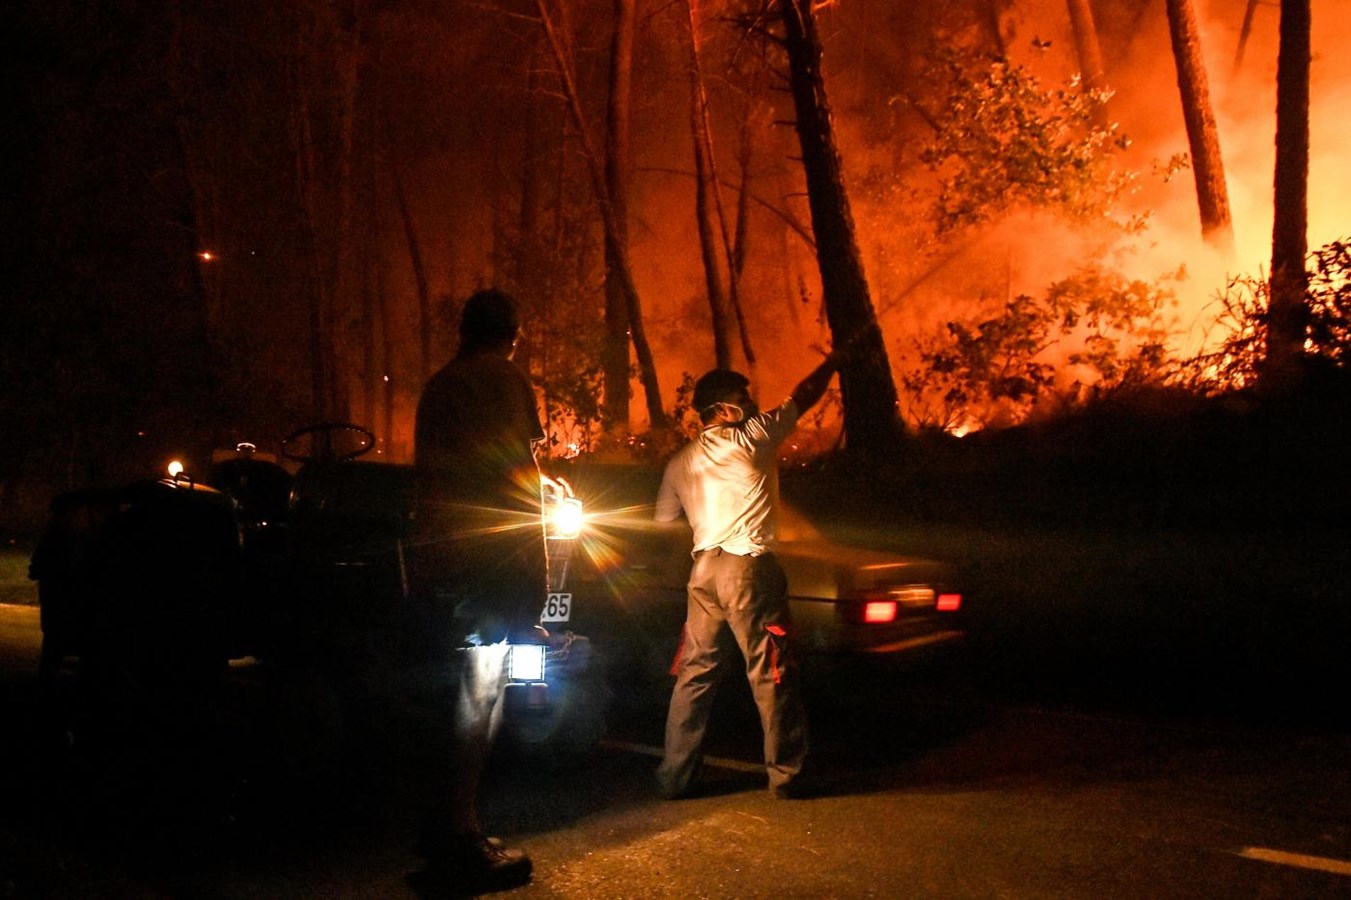 O pior dia do ano de incêndios em imagens